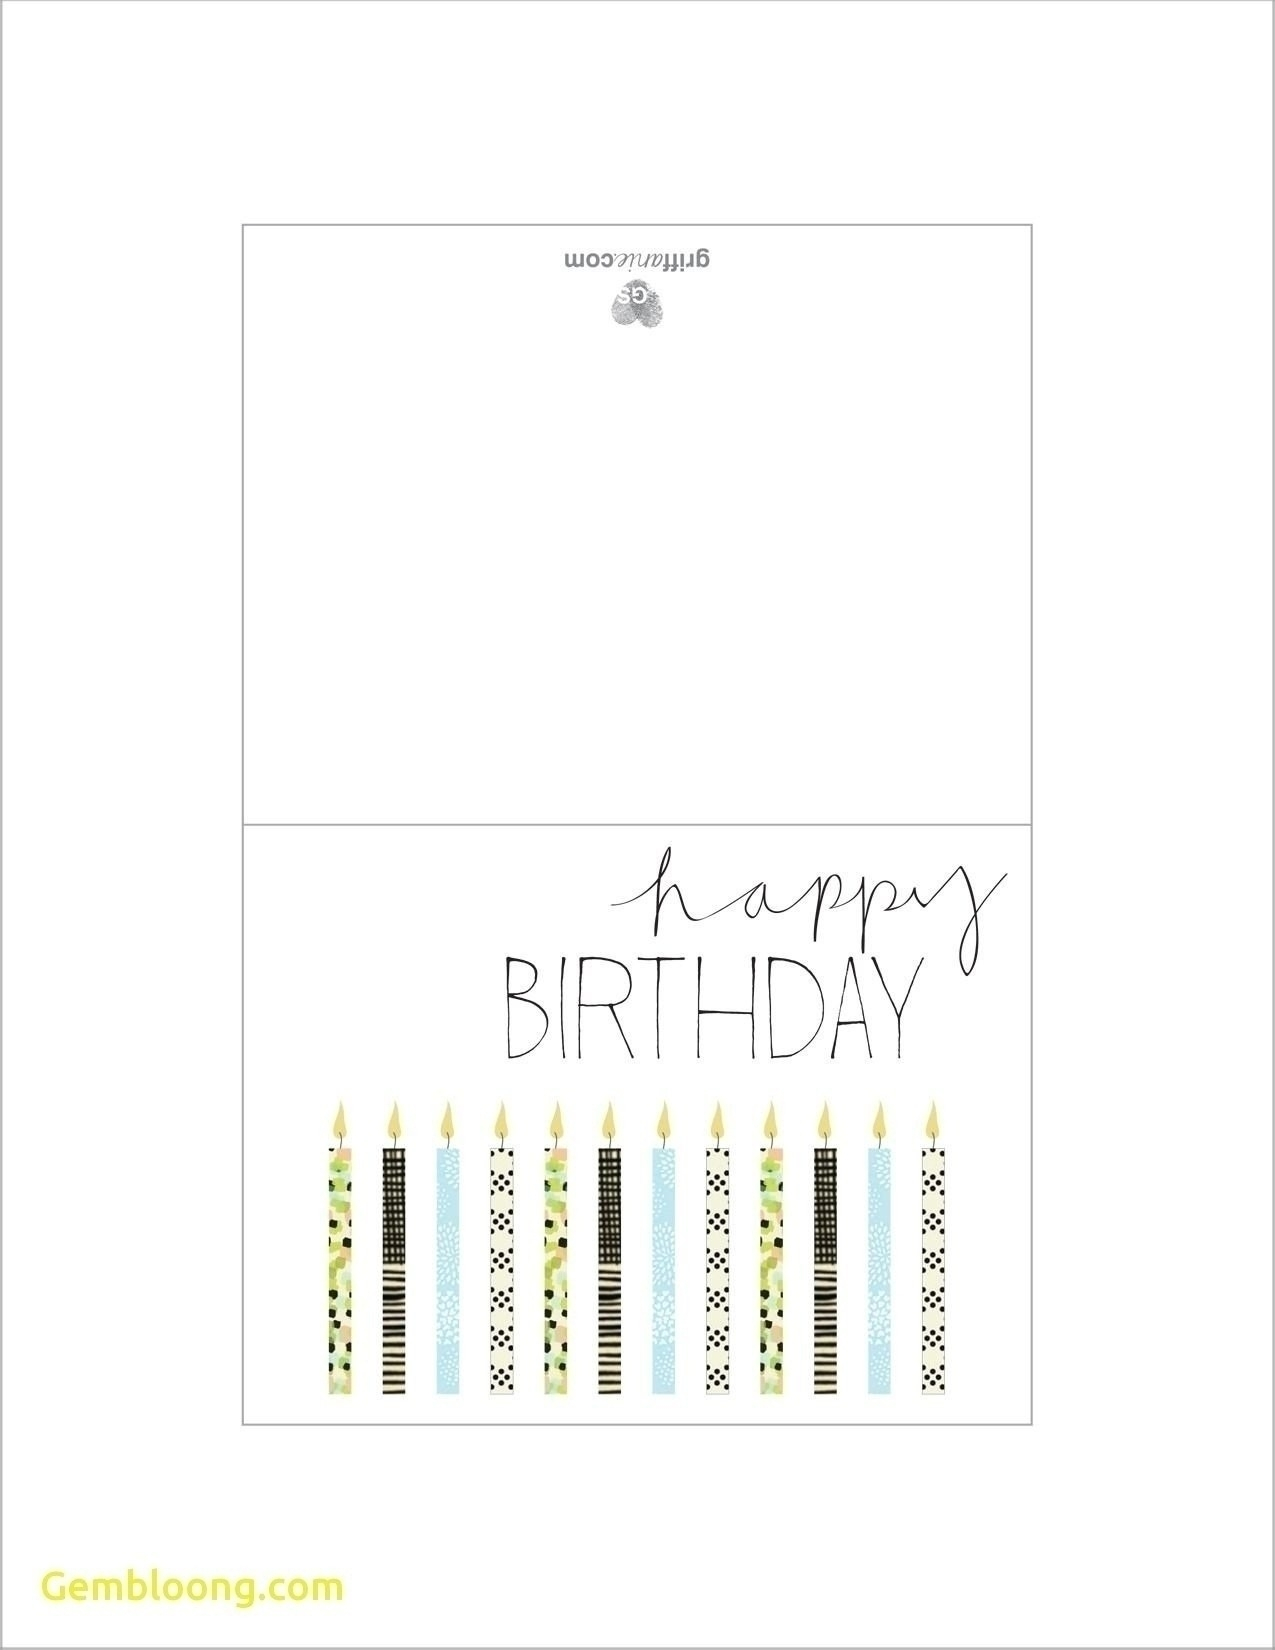 Birthday Card Text Ideas 027 Printable Birthday Card Template Ideas Cards Foldable For Boys